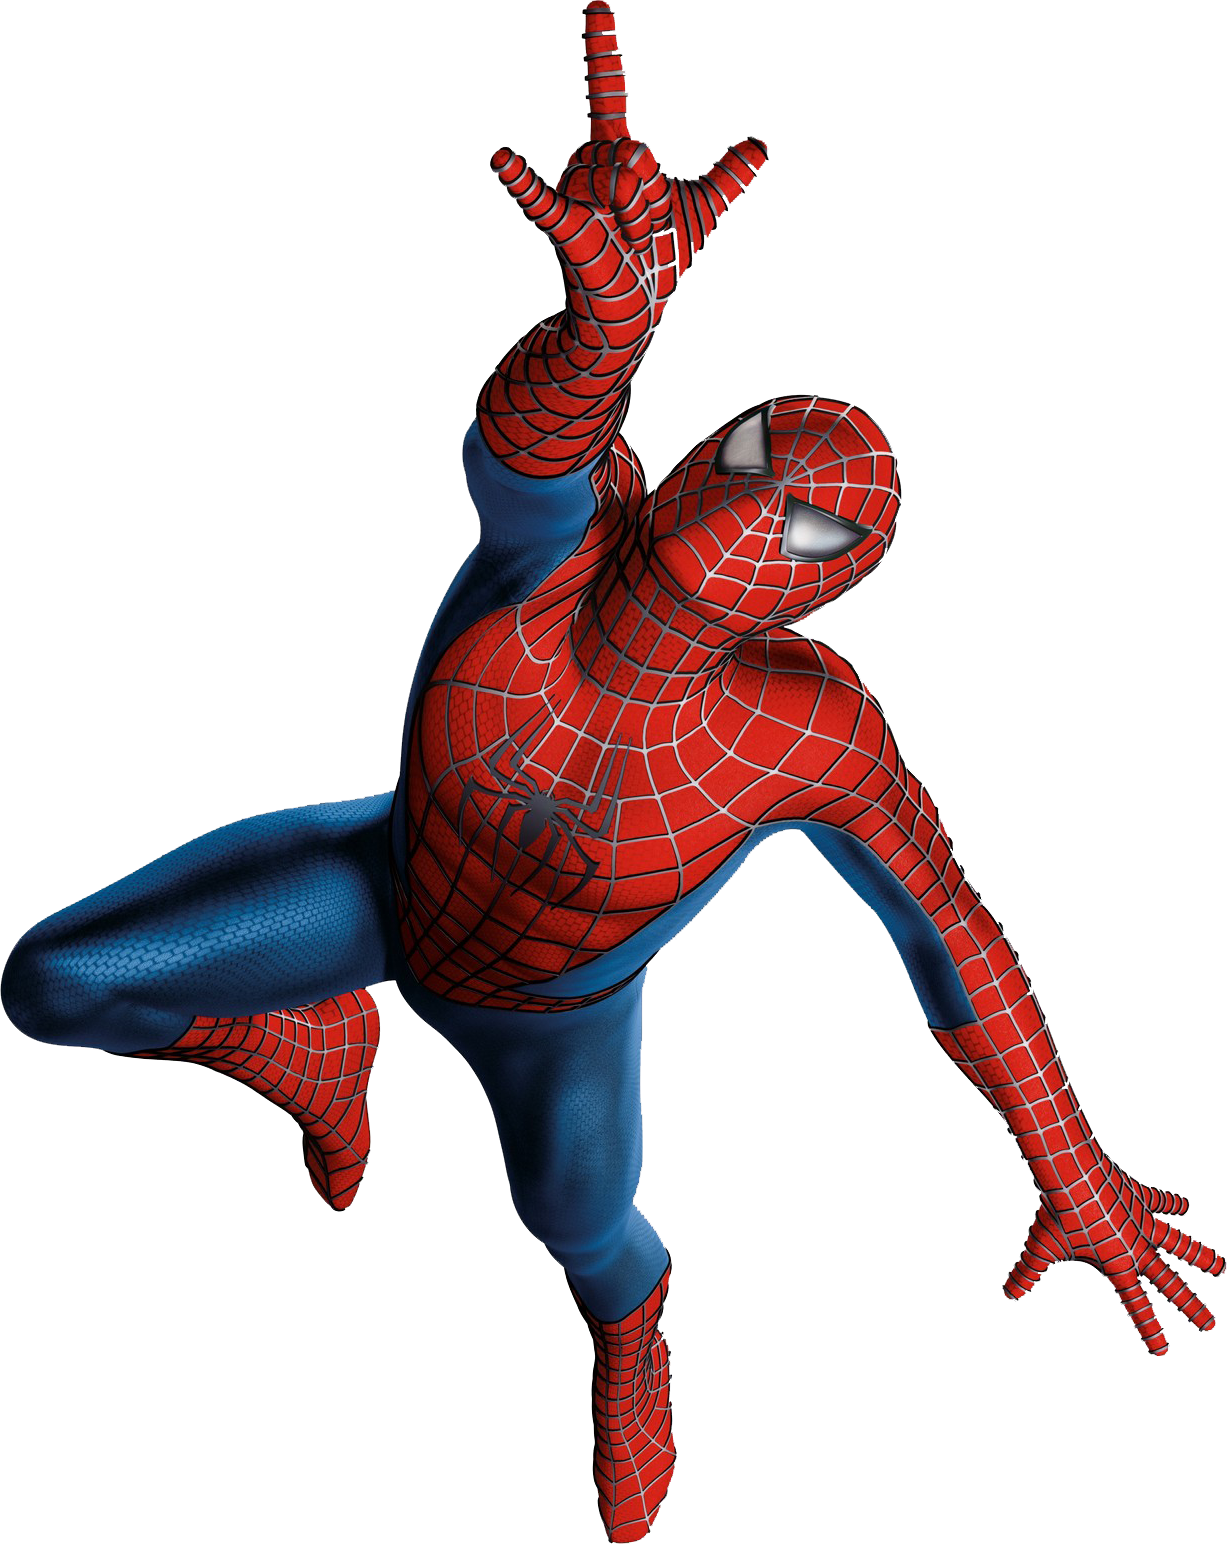 Download - Spider Man 3 Spider Man (1227x1544)